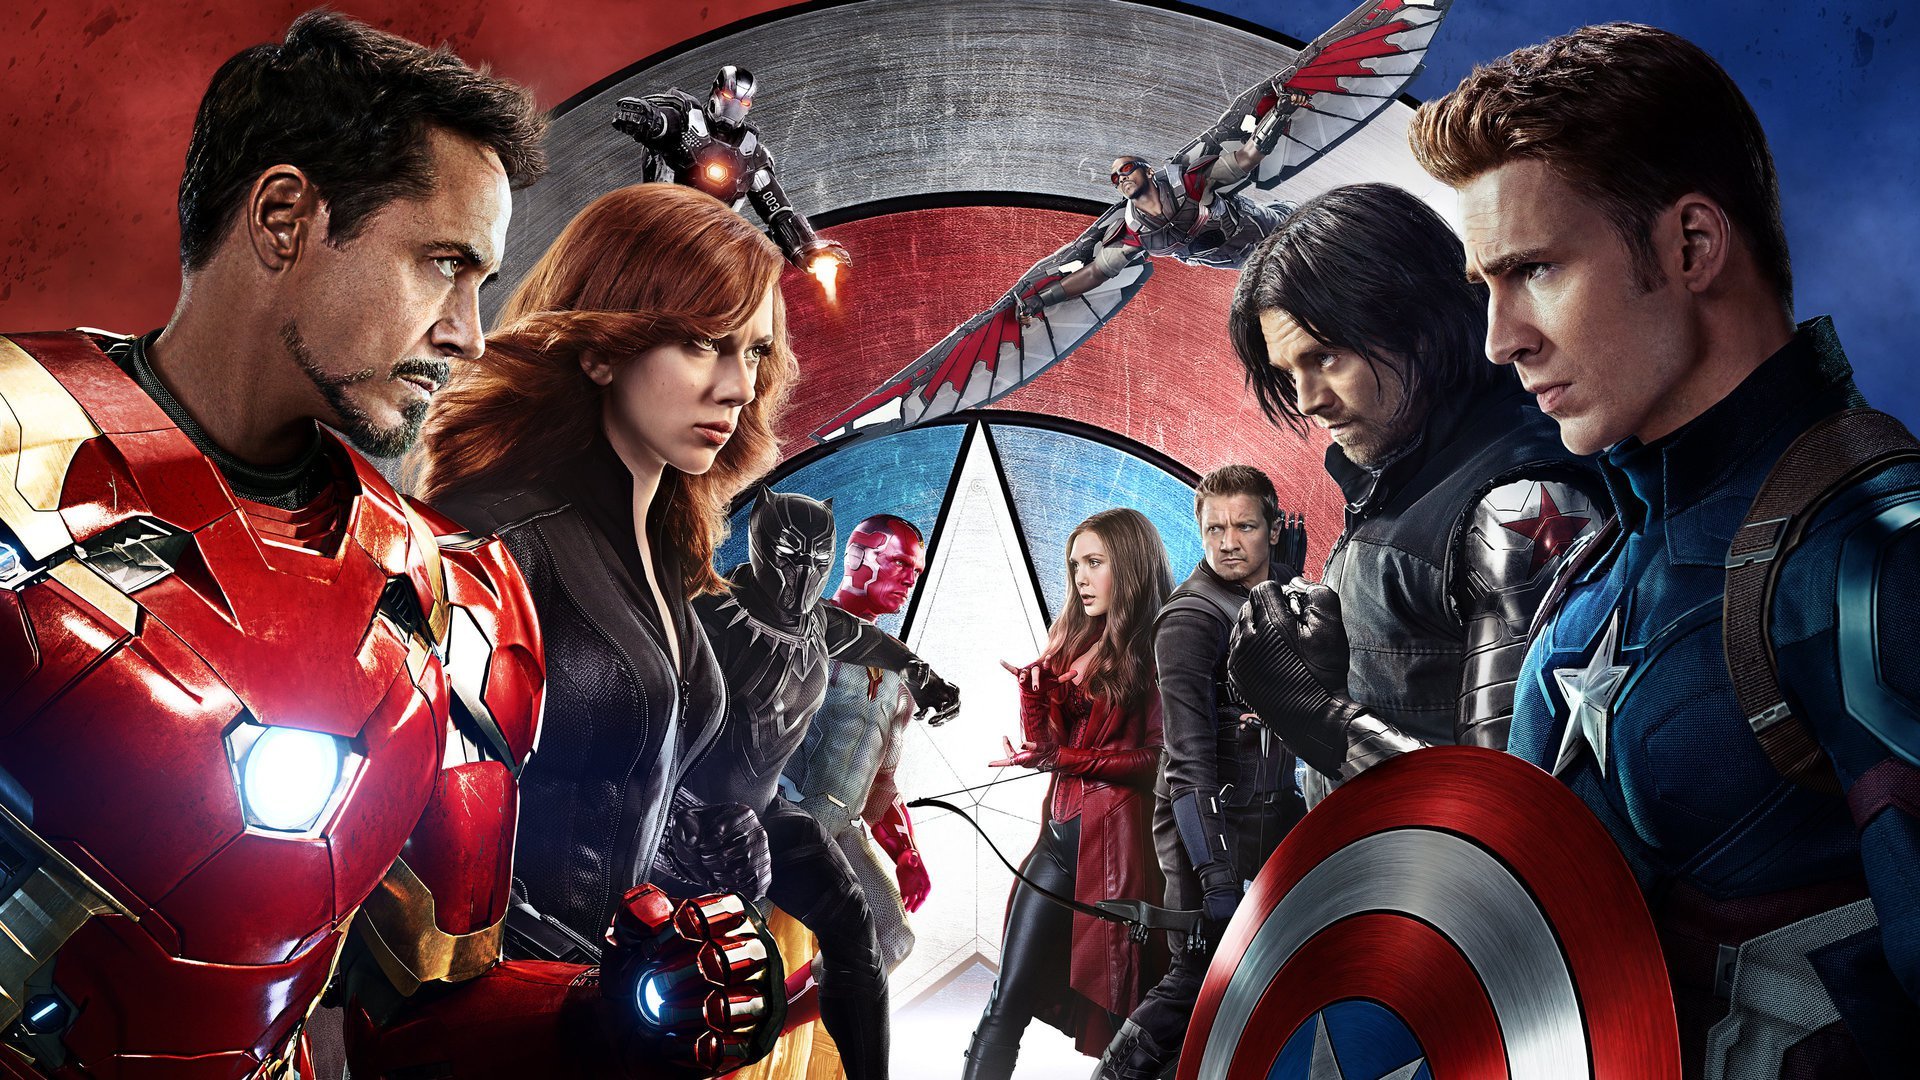 კაპიტანი ამერიკა: სამოქალაქო ომი / Captain America: Civil War (Kapitani Amerika: Samoqalaqo Omi Qartulad) ქართულად